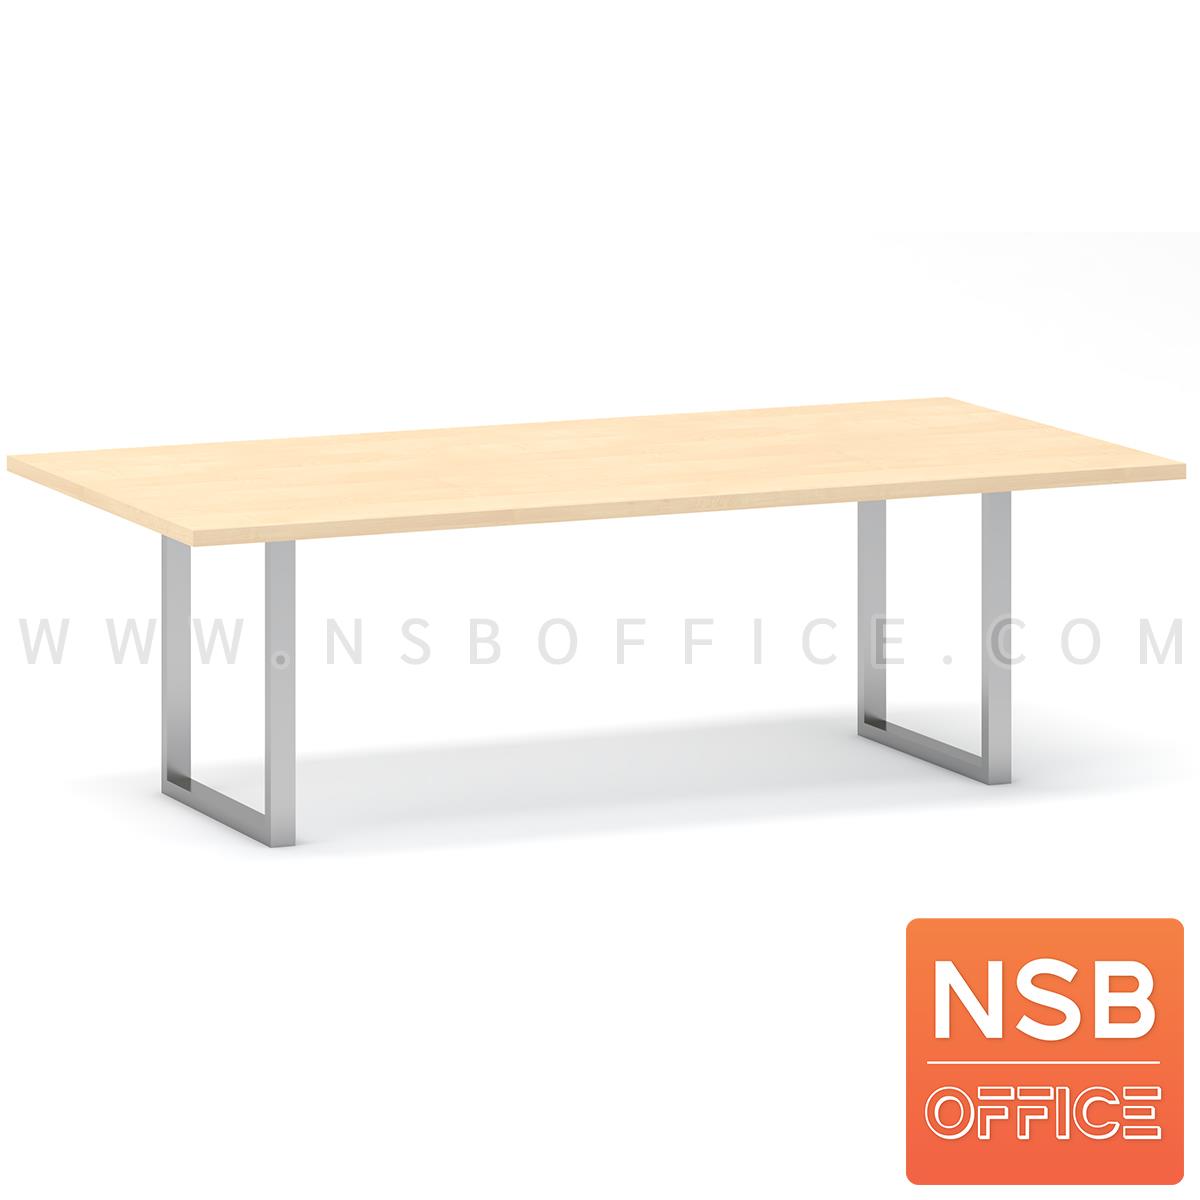 โต๊ะประชุมทรงสีเหลี่ยม รุ่น Winstone (วินสโตน) ขนาด 200W, 240W cm ขาเหล็กเหลี่ยม